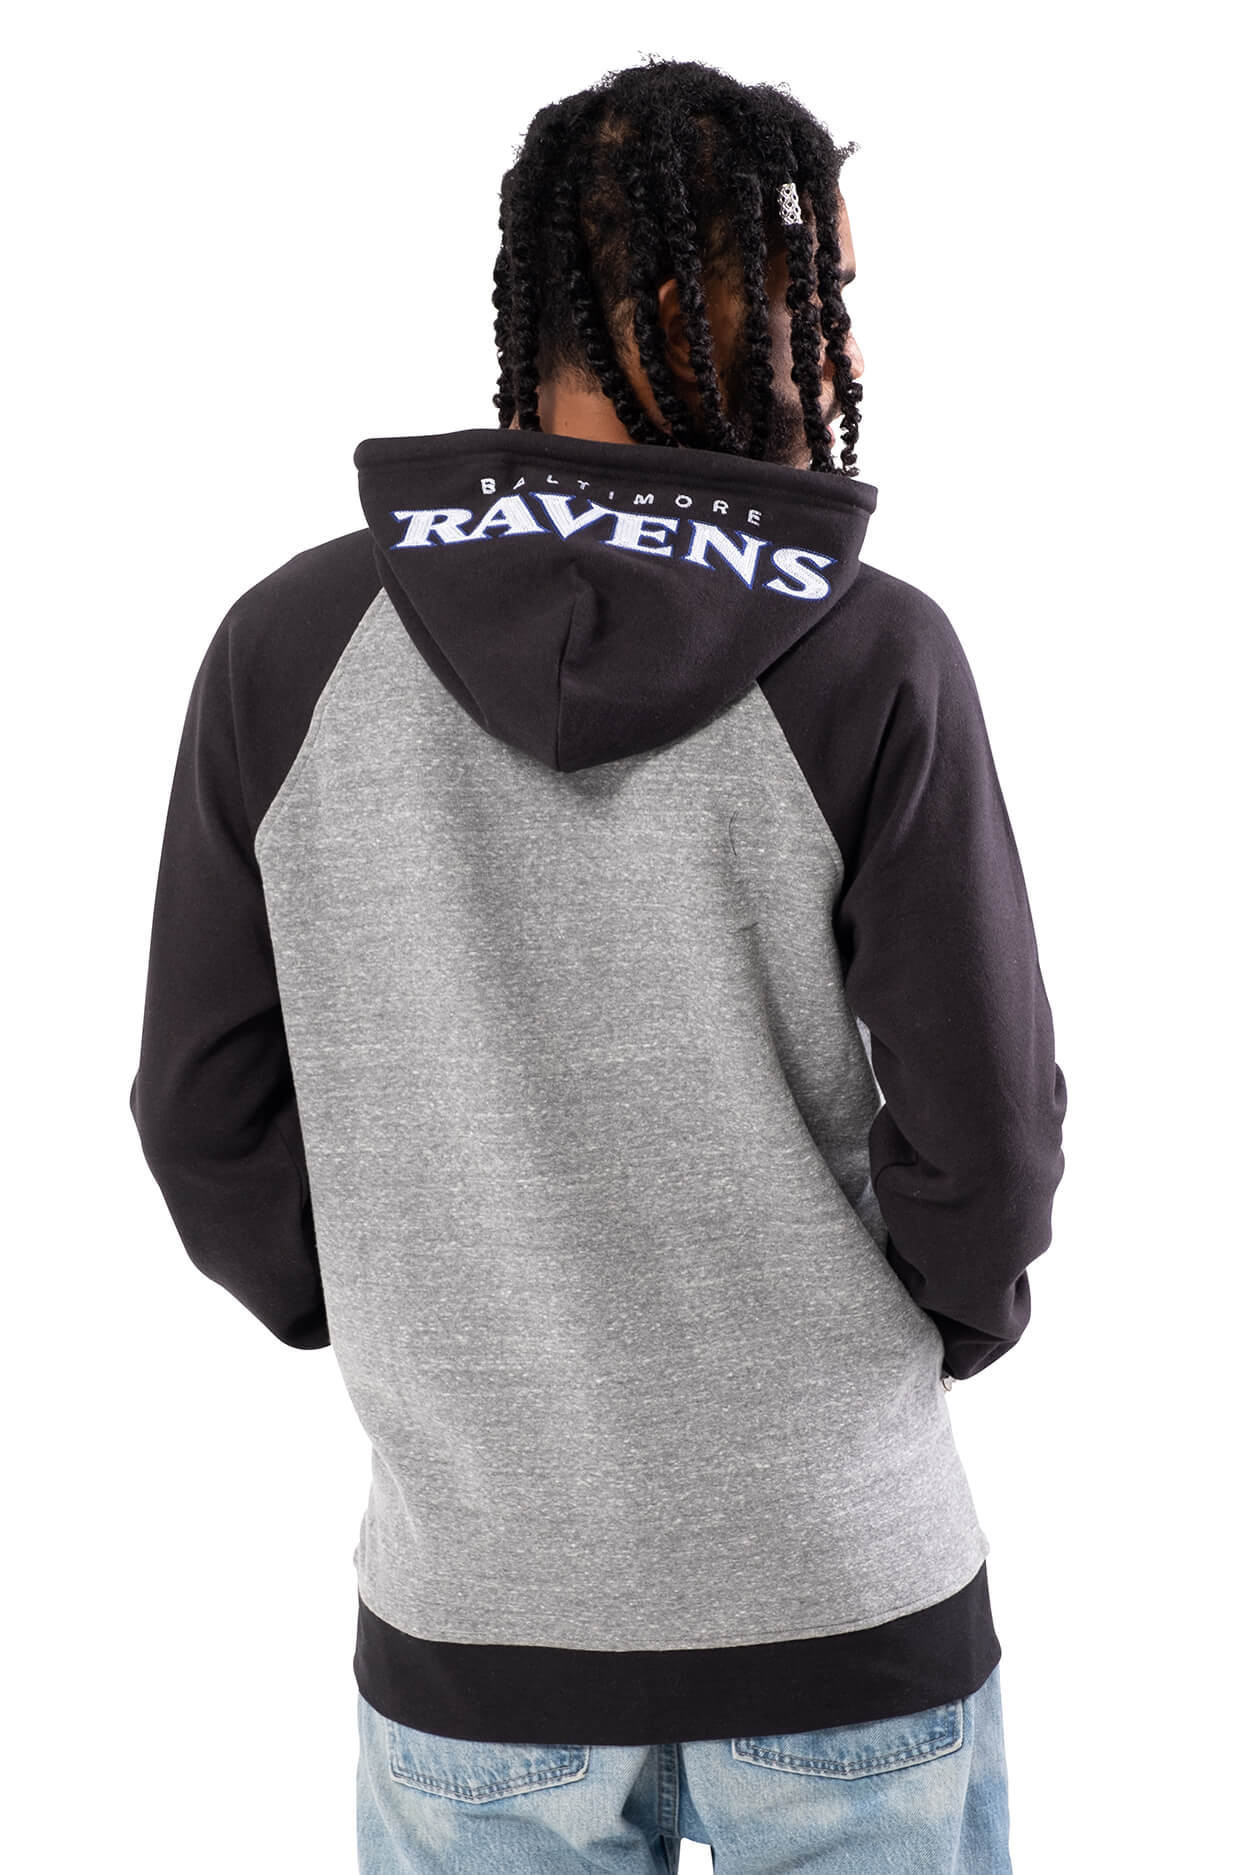 NFL Baltimore Ravens Men's Full Zip Hoodie|Baltimore Ravens